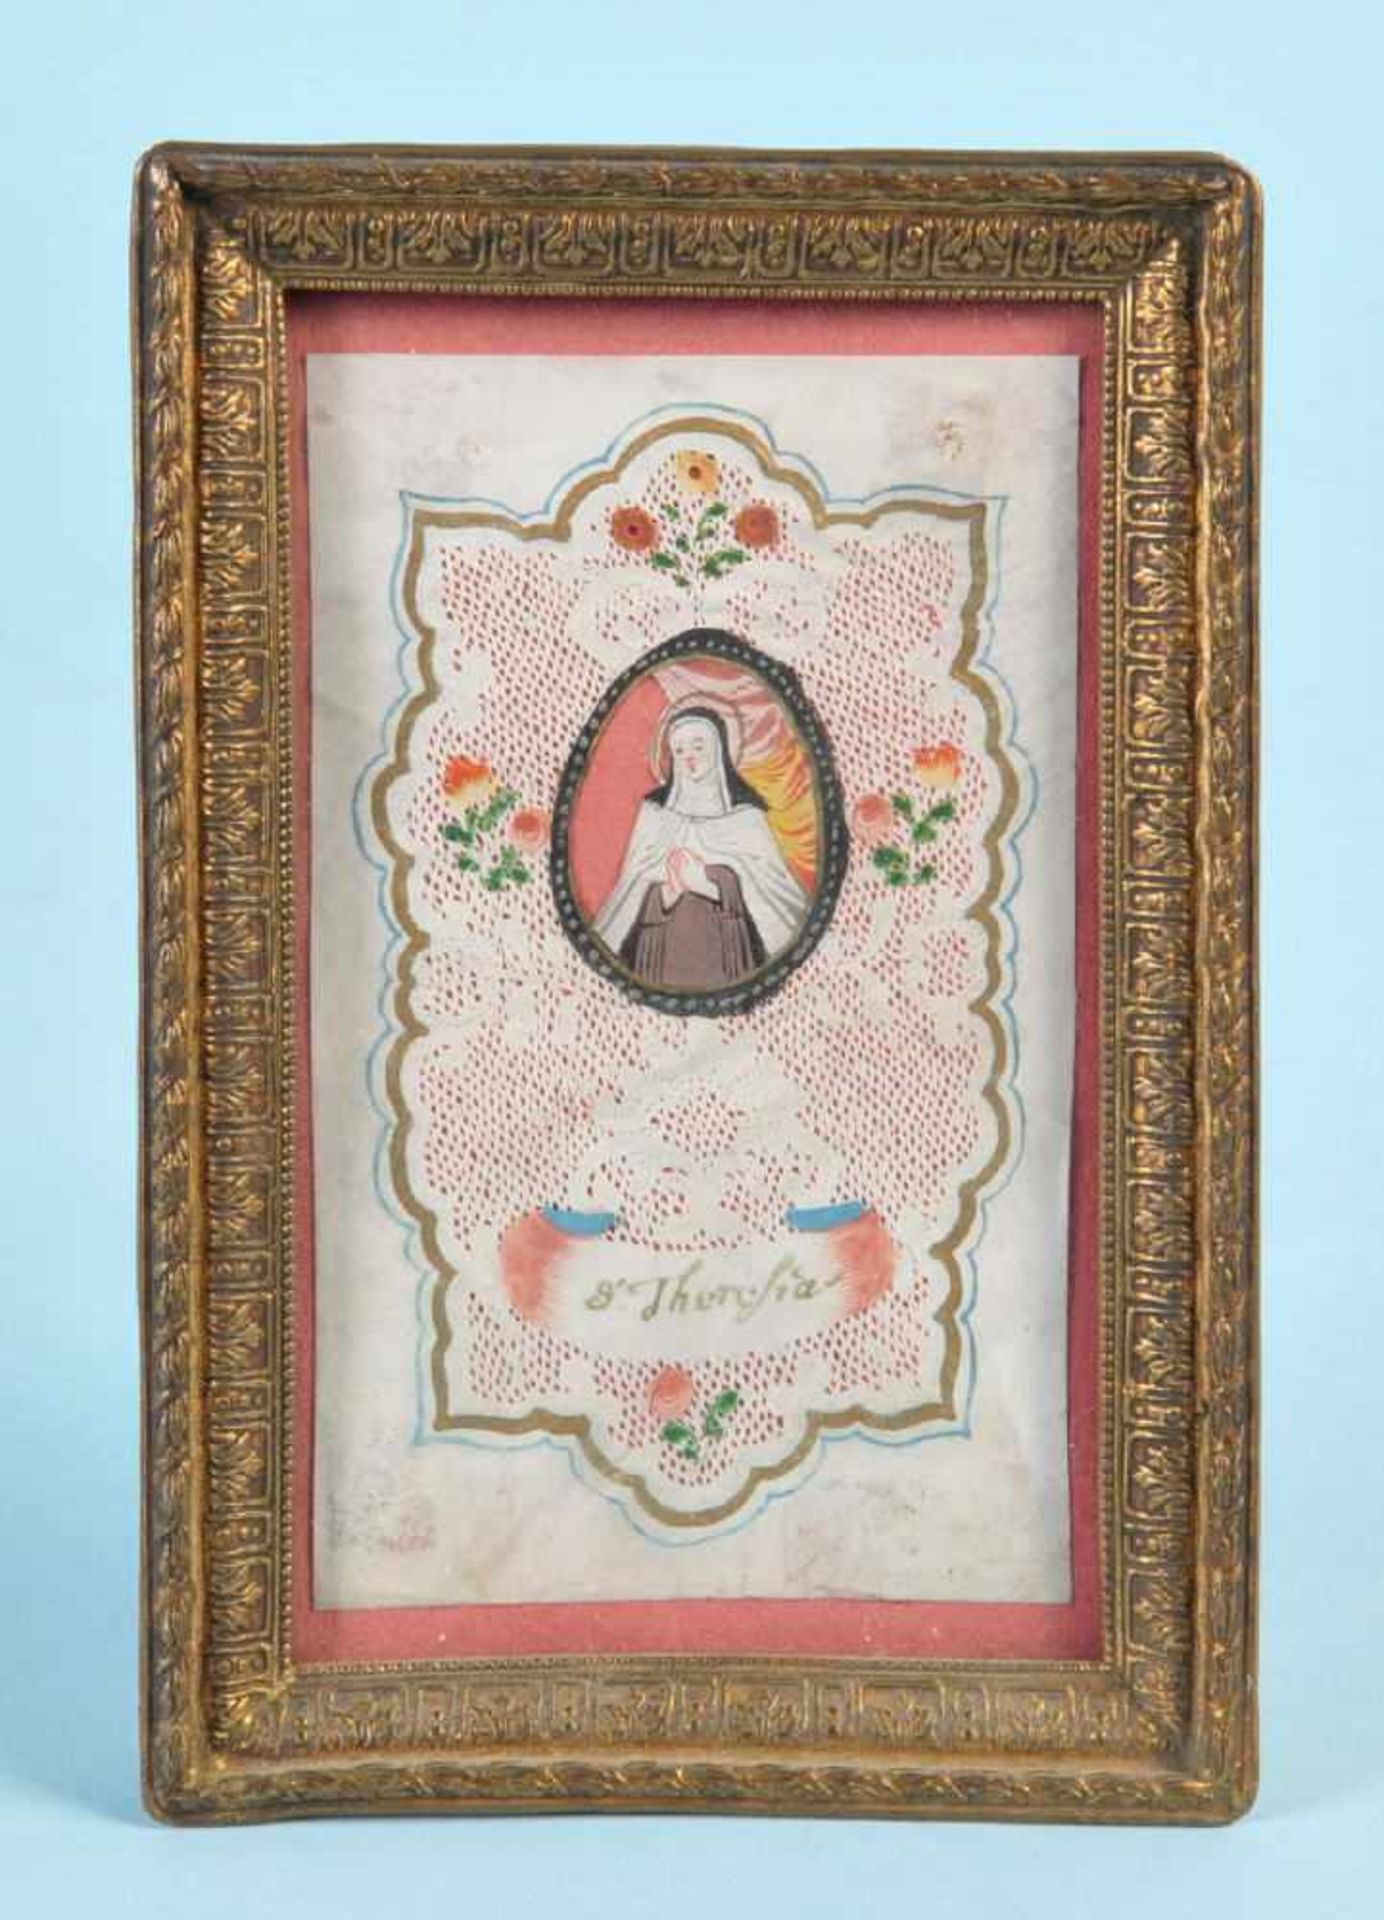 SpitzenbildchenPergament, handgeschnitten, aquarell., 11 x 6,5 cm, " S. Theresia ", 18. Jh., R